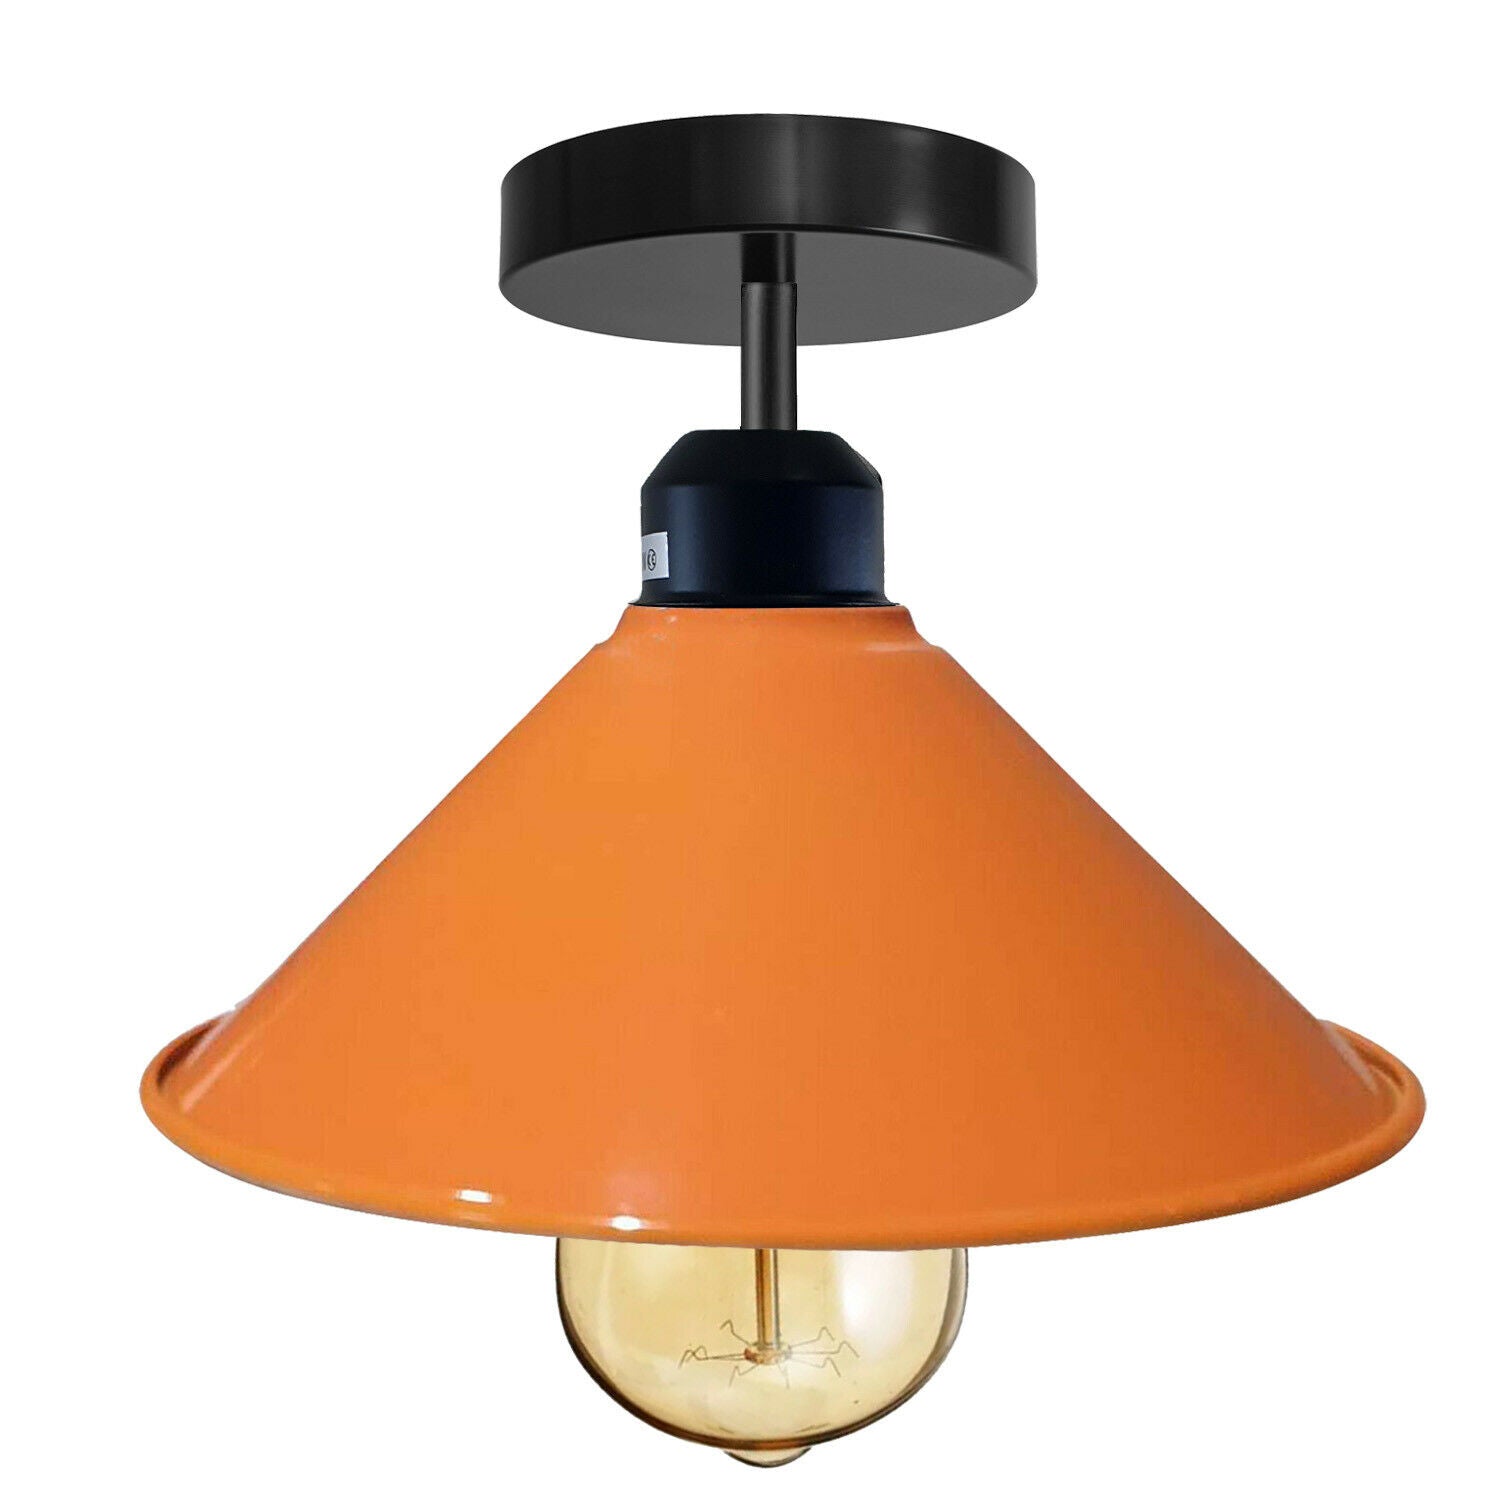 Orange-Deckenlampe Industrie Retro E27 Hängeleuchte Kegel Metall Draht  Vintage Lampe